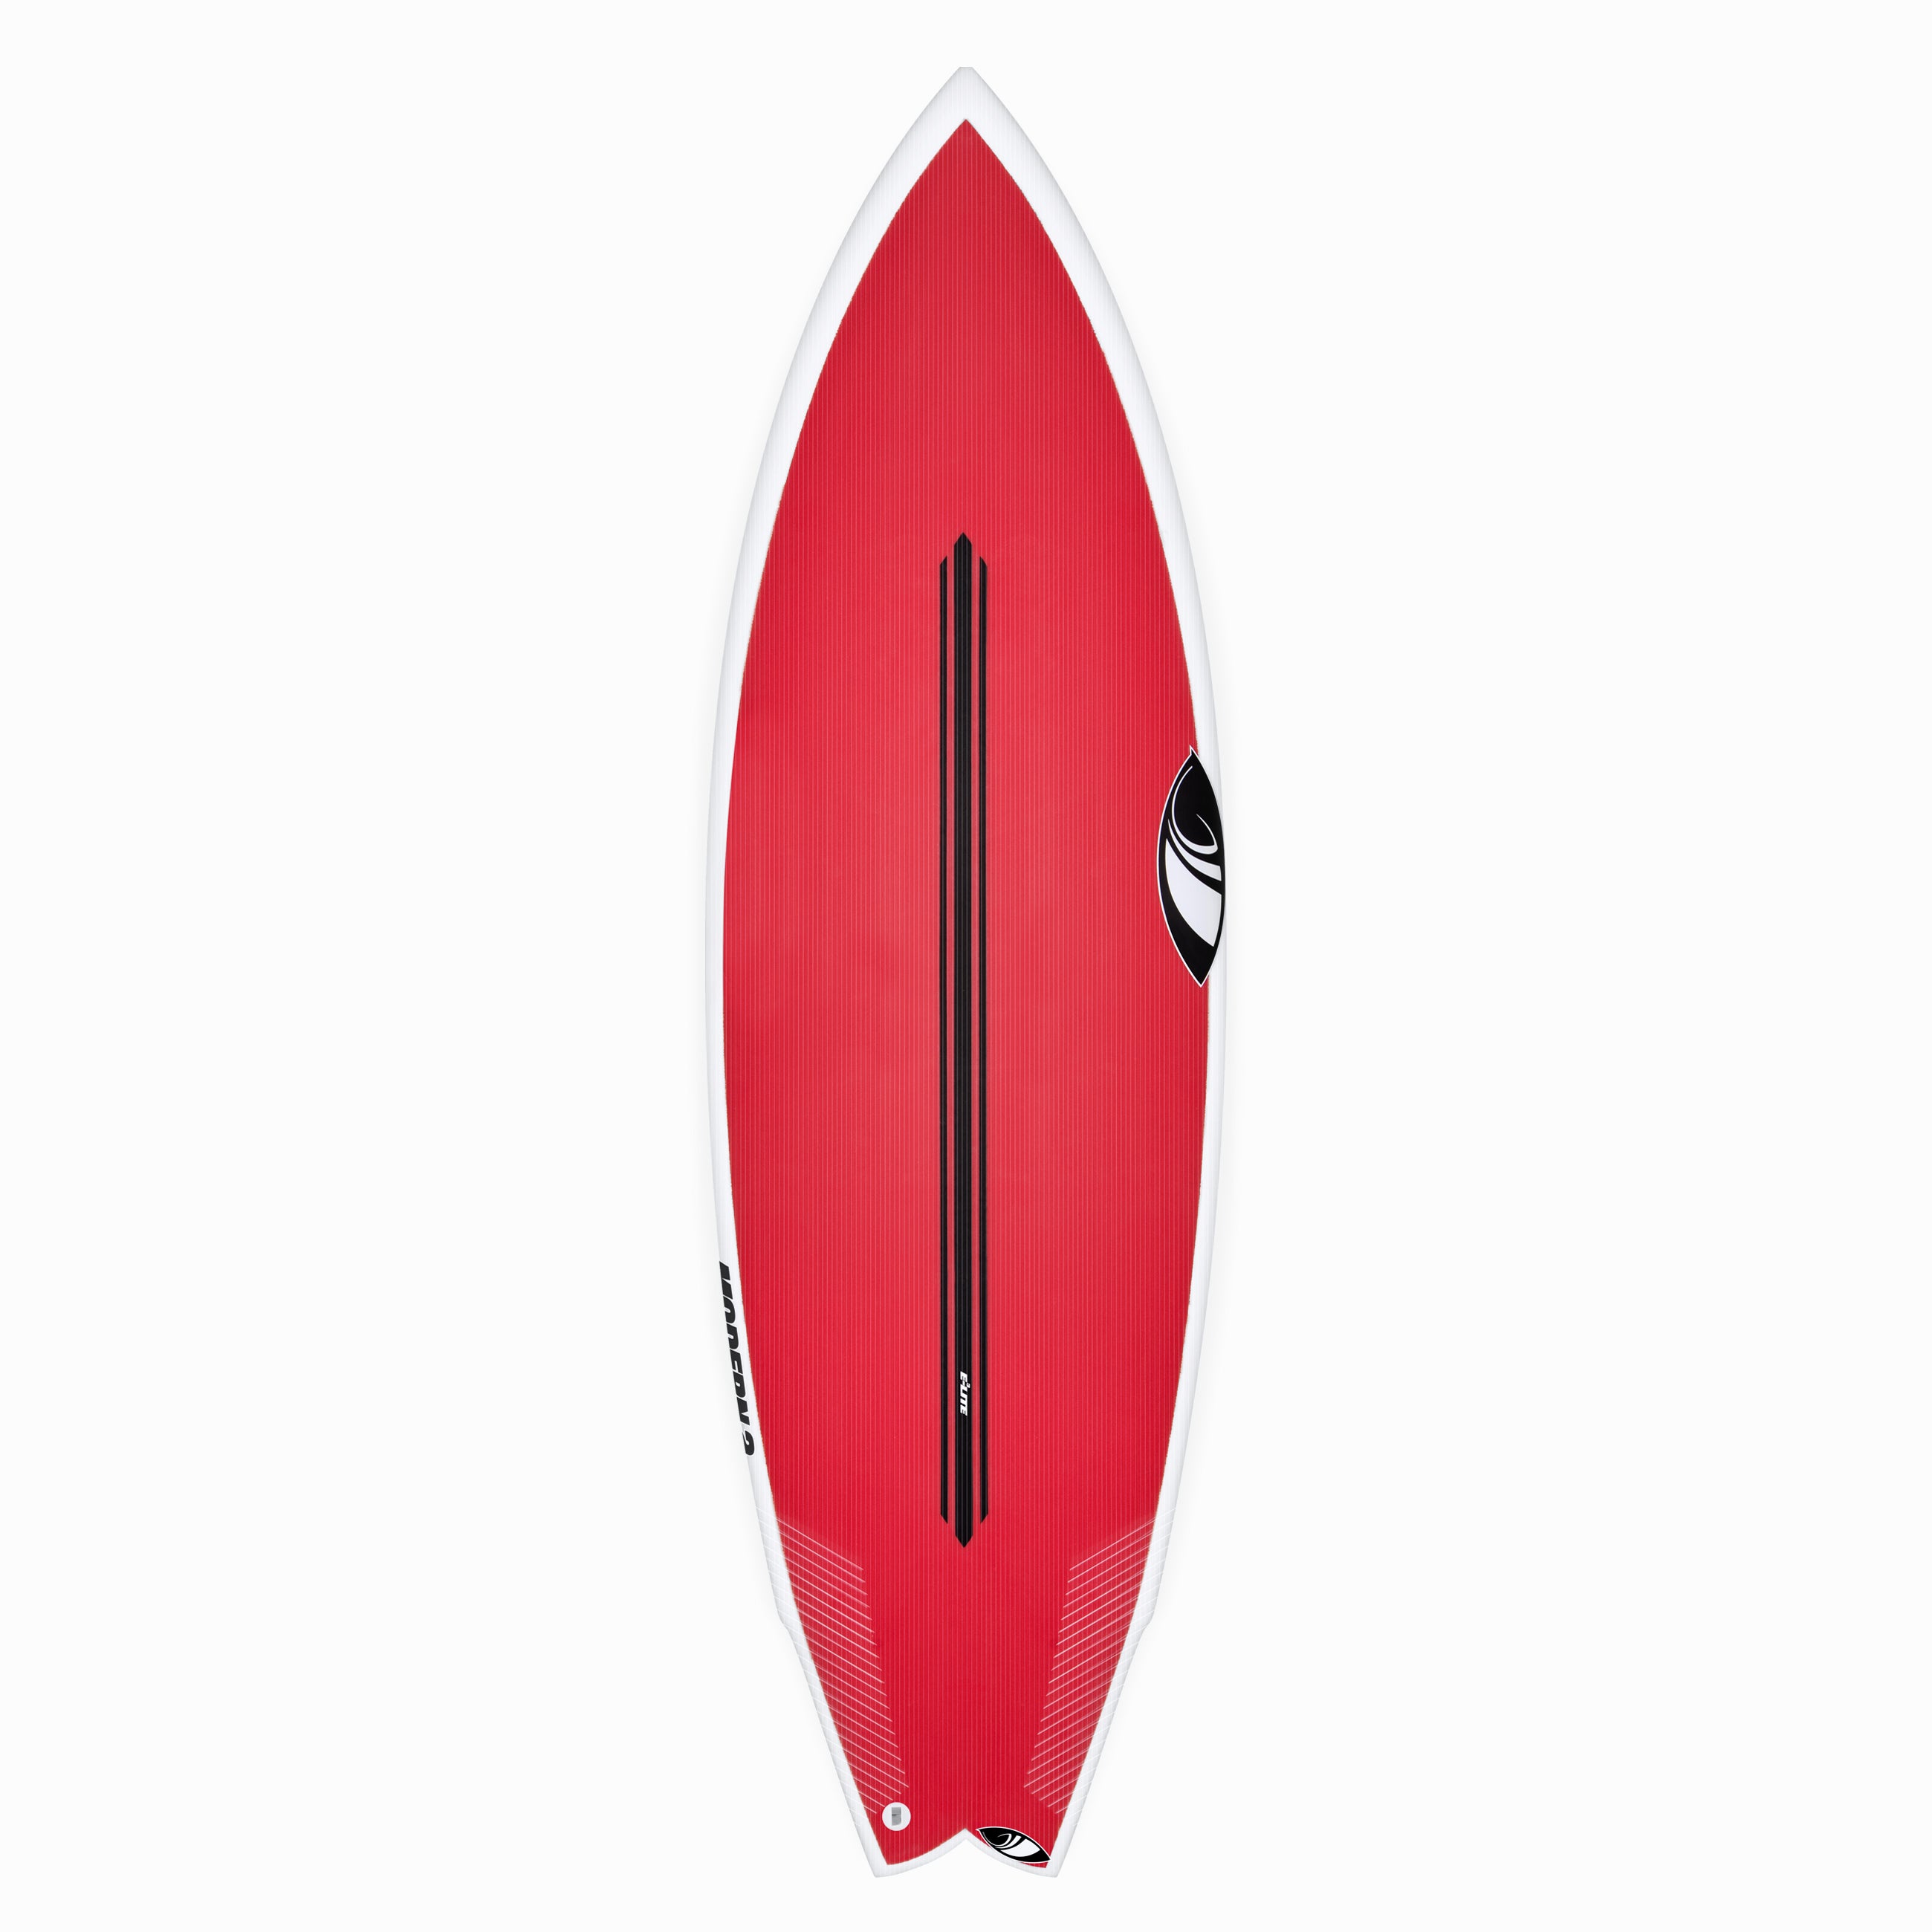 Full Range – Sharp Eye Surfboards